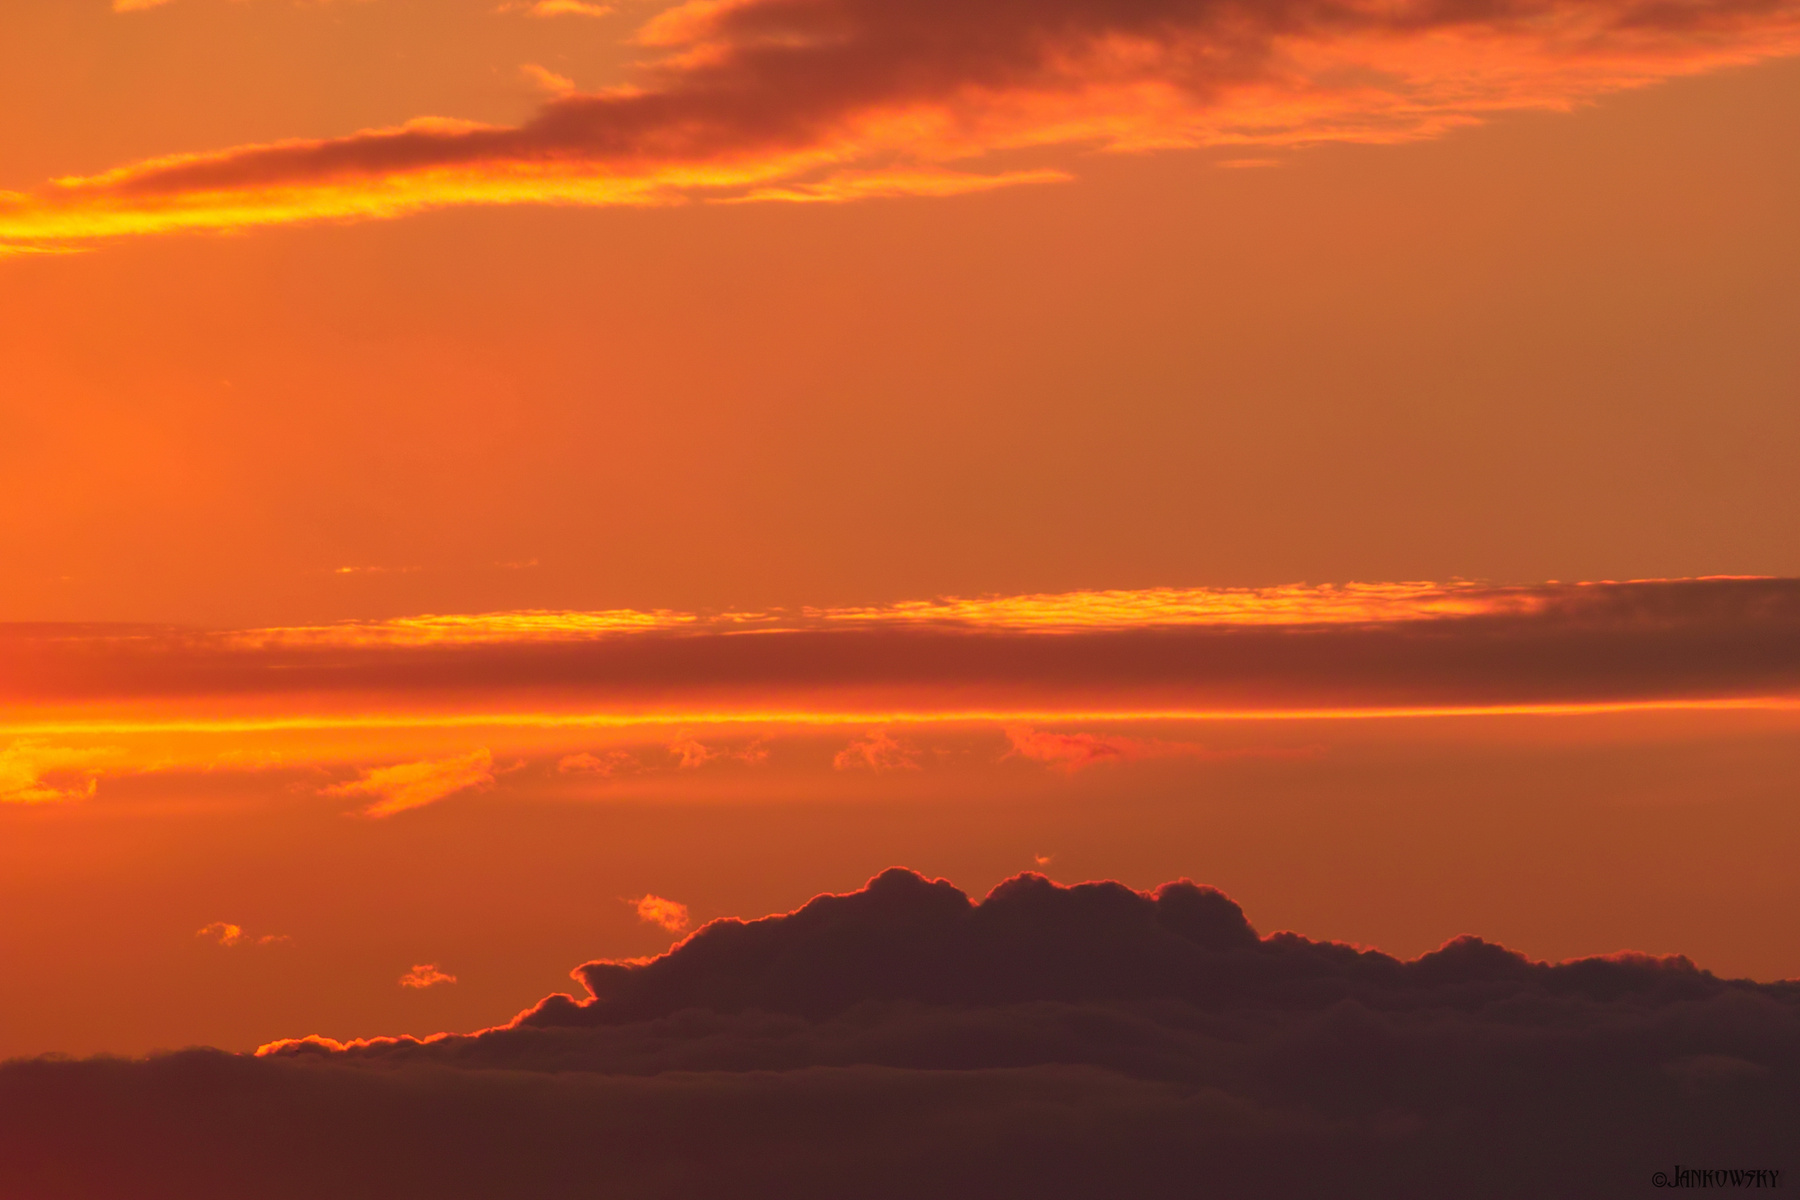 Закатная бездна 23.10.20 омск бездна закат оранжевое небо странная облачность форма облаков foveon гладкий рендеринг sigma sd14 Sigma 120-300mm f2.8